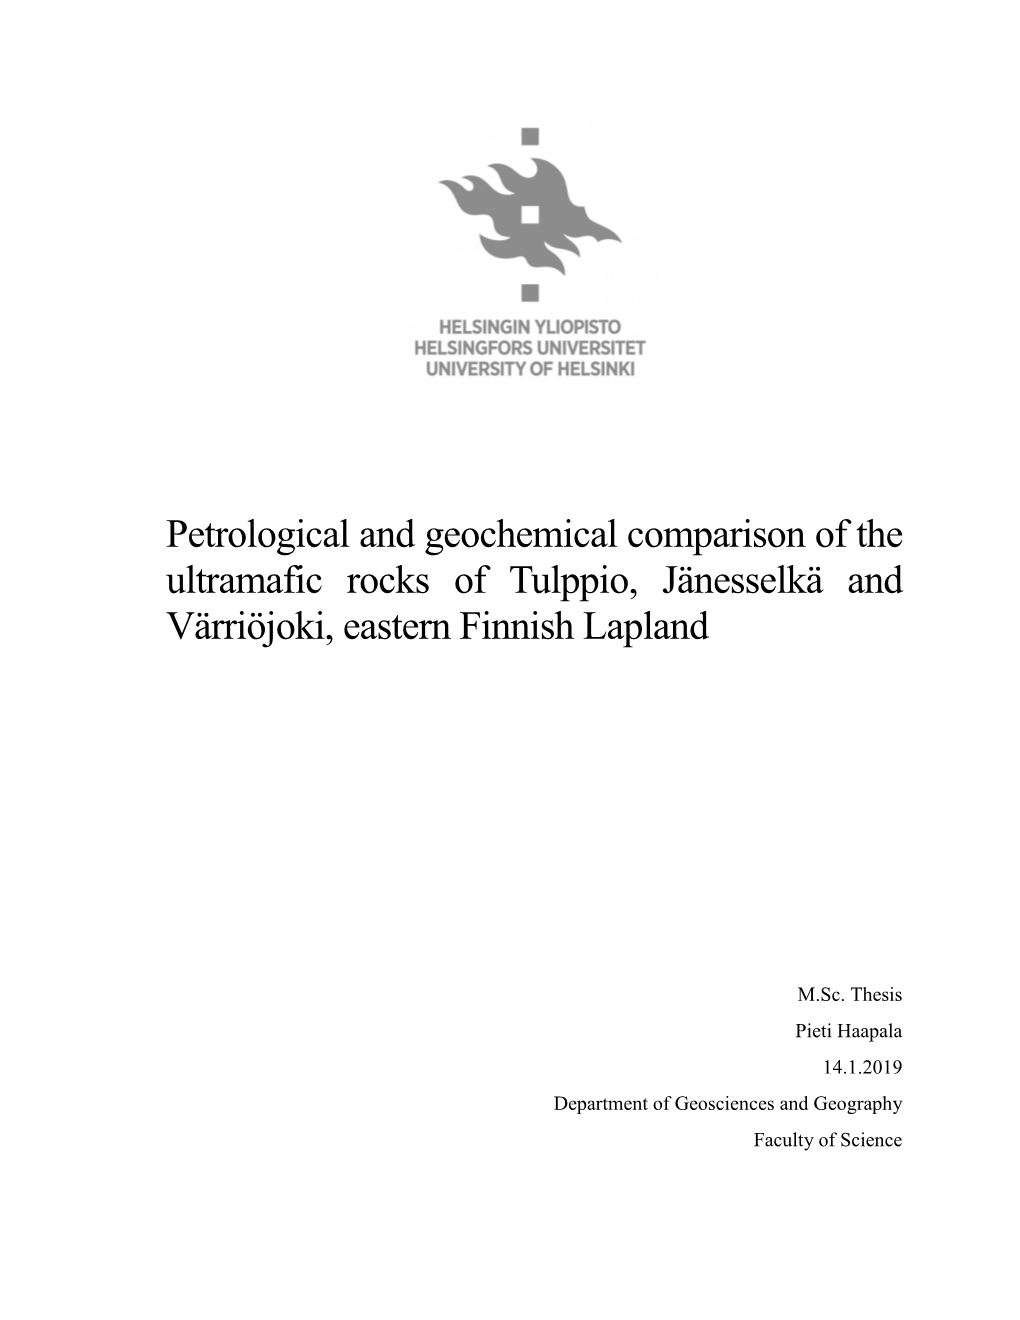 Petrological and Geochemical Comparison of the Ultramafic Rocks of Tulppio, Jänesselkä and Värriöjoki, Eastern Finnish Lapland